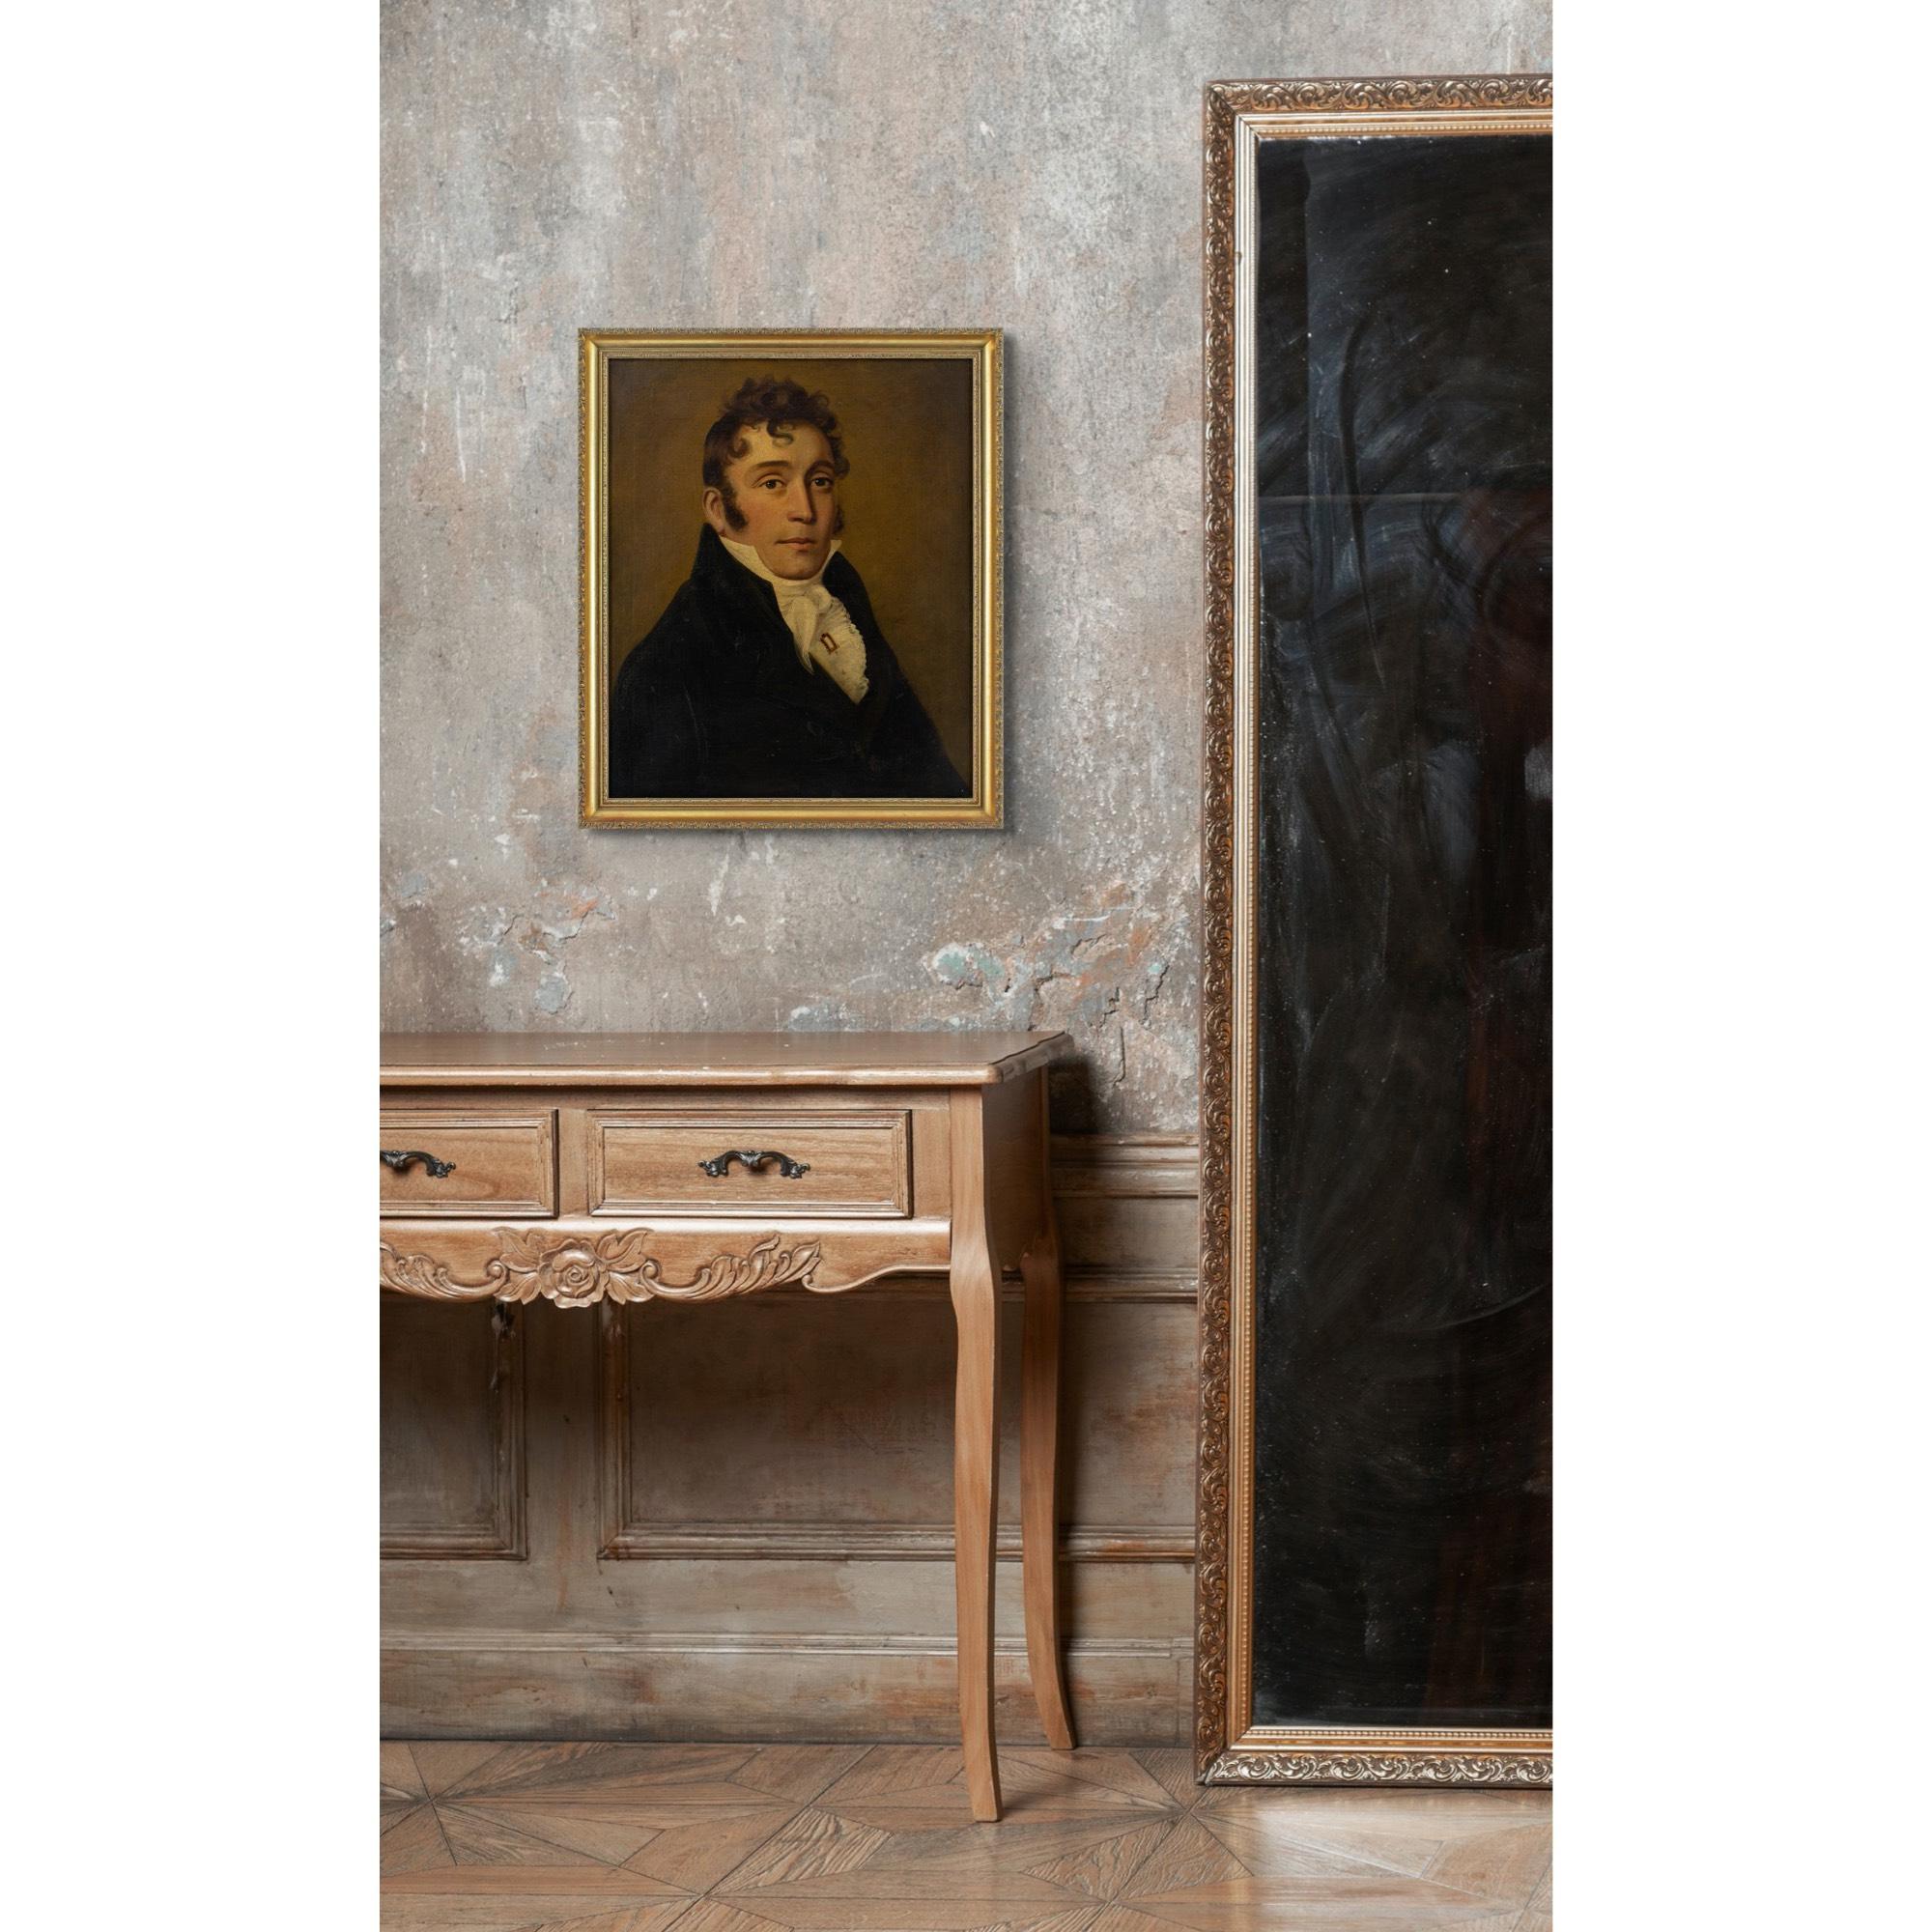 Cette peinture à l'huile britannique du début du XIXe siècle représente un robuste gentilhomme campagnard vêtu d'un manteau noir, d'une chemise blanche au col relevé et d'une cravate blanche.

Il est habillé selon la mode plutôt pimpante de la